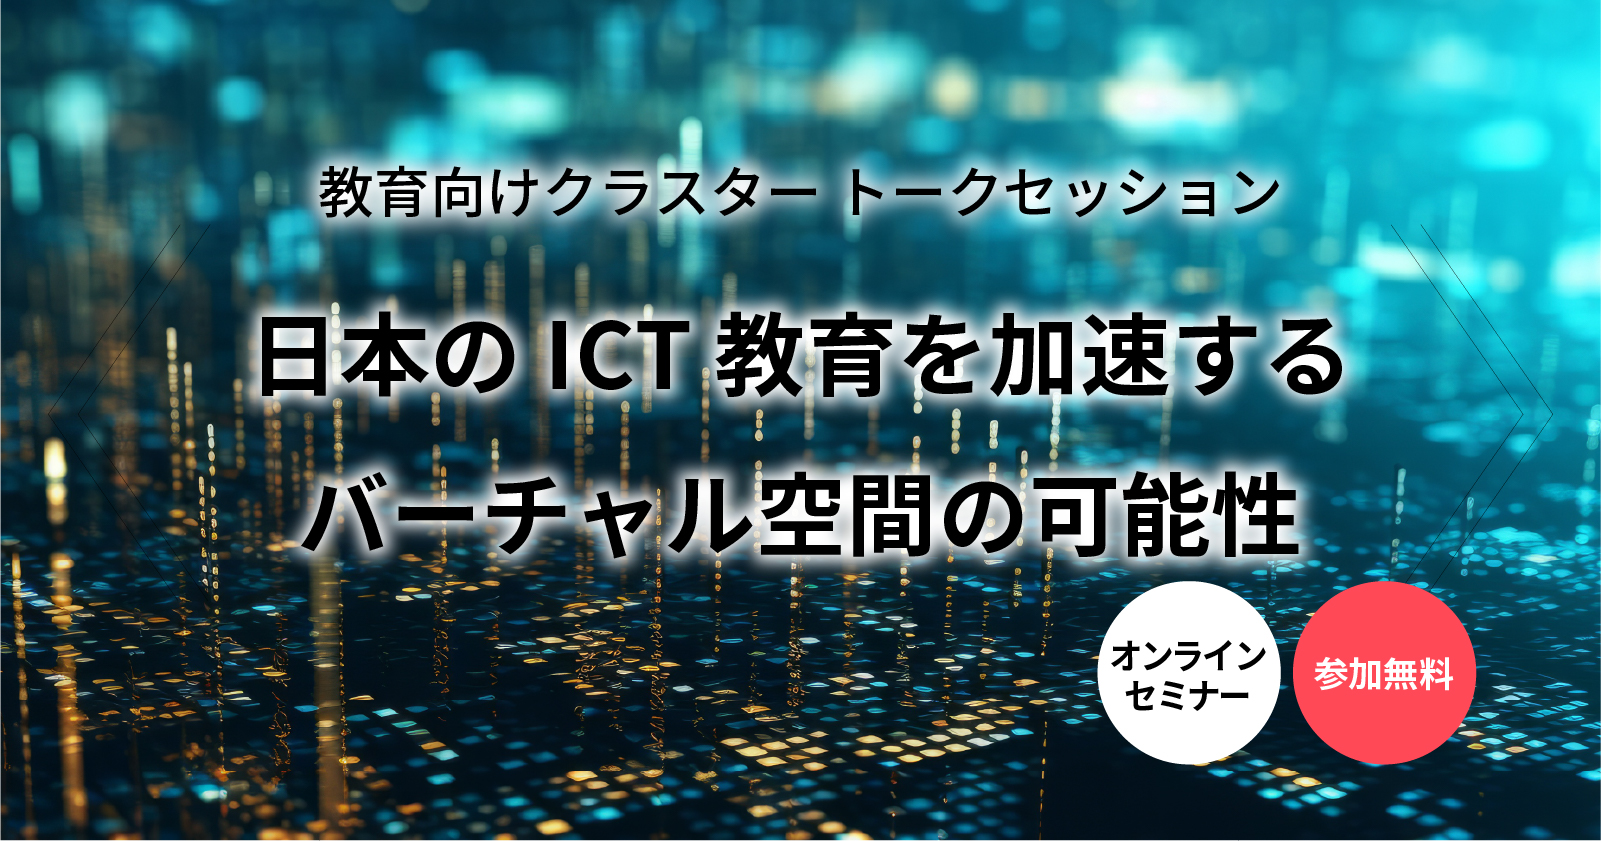 【セミナー】日本のICT教育を加速するバーチャル空間の可能性〜教員向けクラスタートークセッション〜